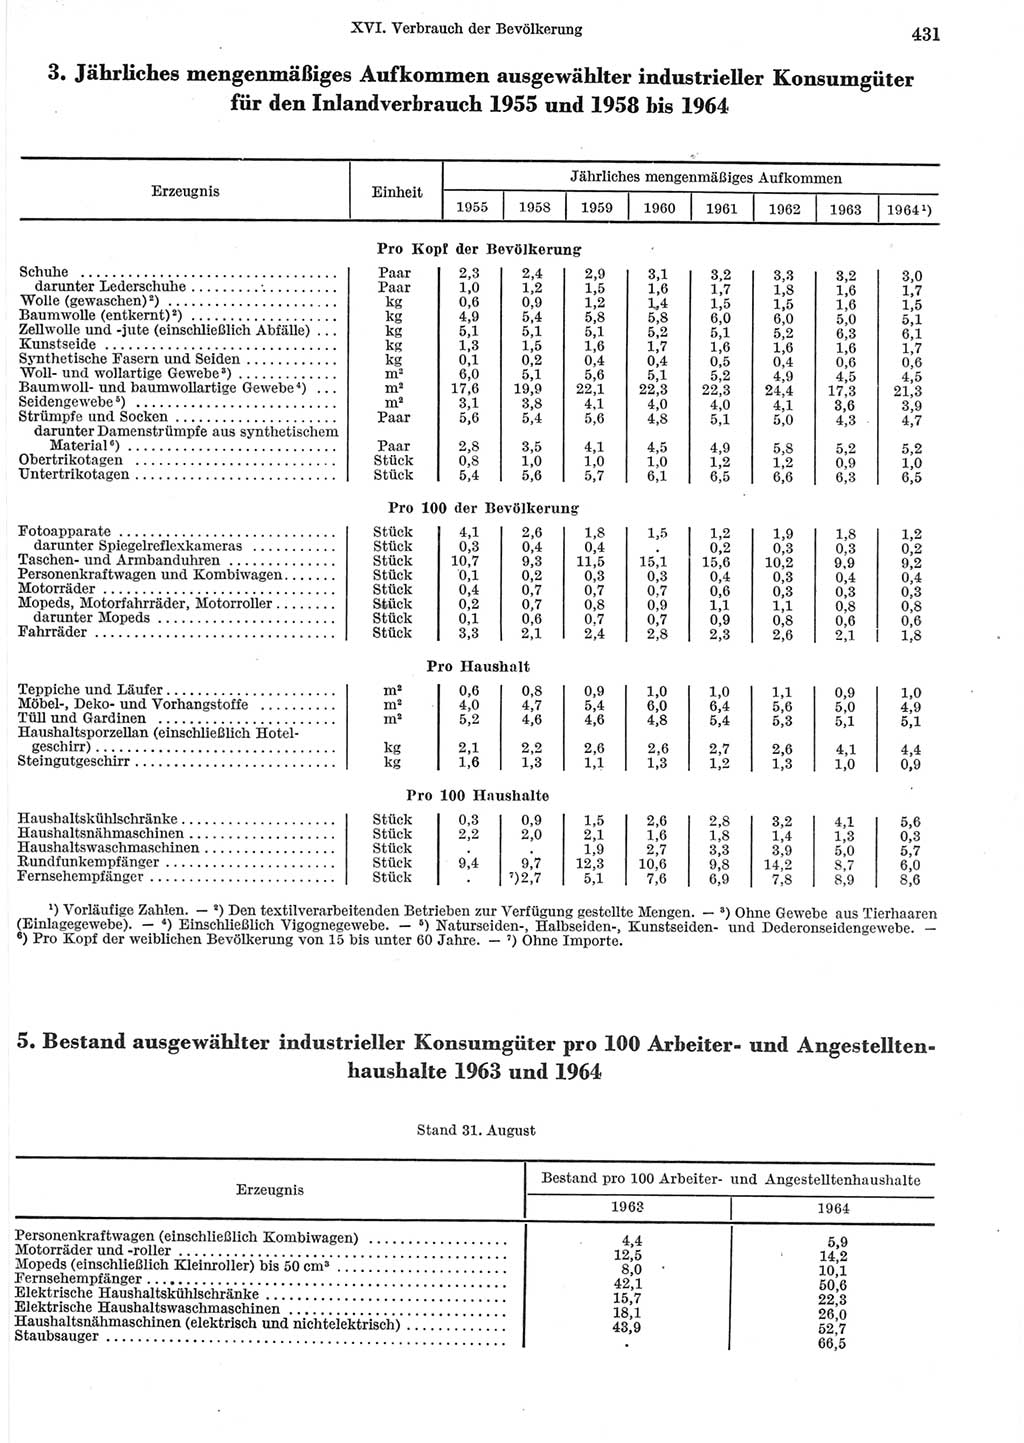 Statistisches Jahrbuch der Deutschen Demokratischen Republik (DDR) 1965, Seite 431 (Stat. Jb. DDR 1965, S. 431)